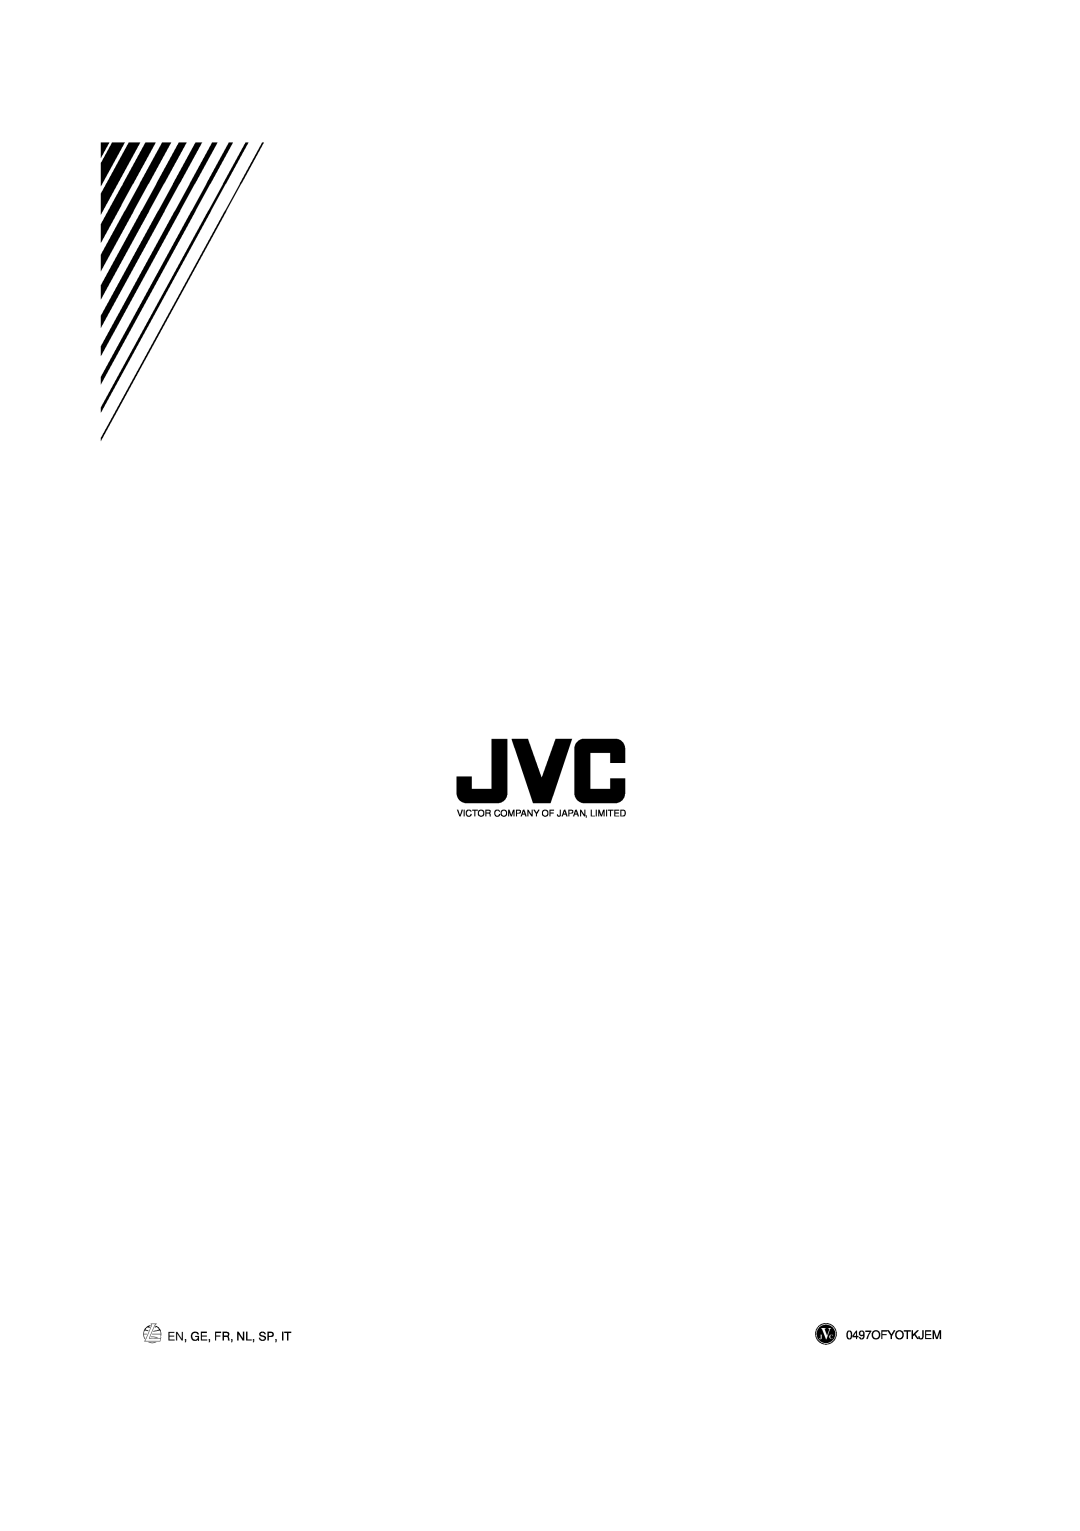 JVC RX-430VBK manual En, Ge, Fr, Nl, Sp, It, 0497OFYOTKJEM, Victor Company Of Japan, Limited 